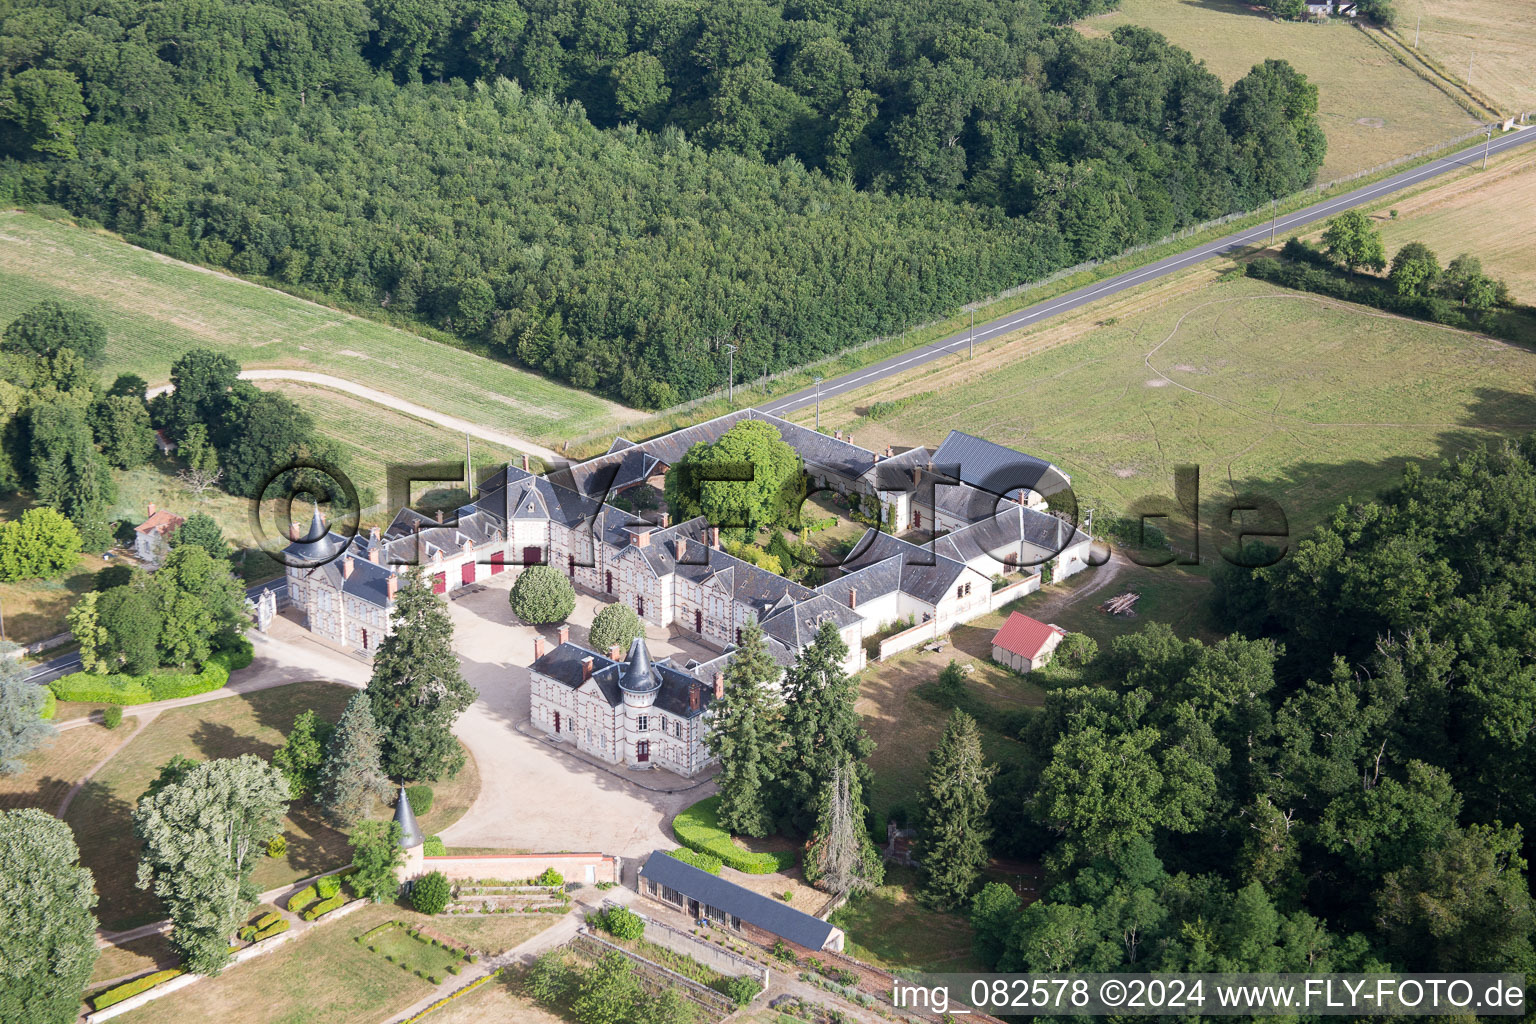 Château de Combreux à Combreux dans le département Loiret, France hors des airs